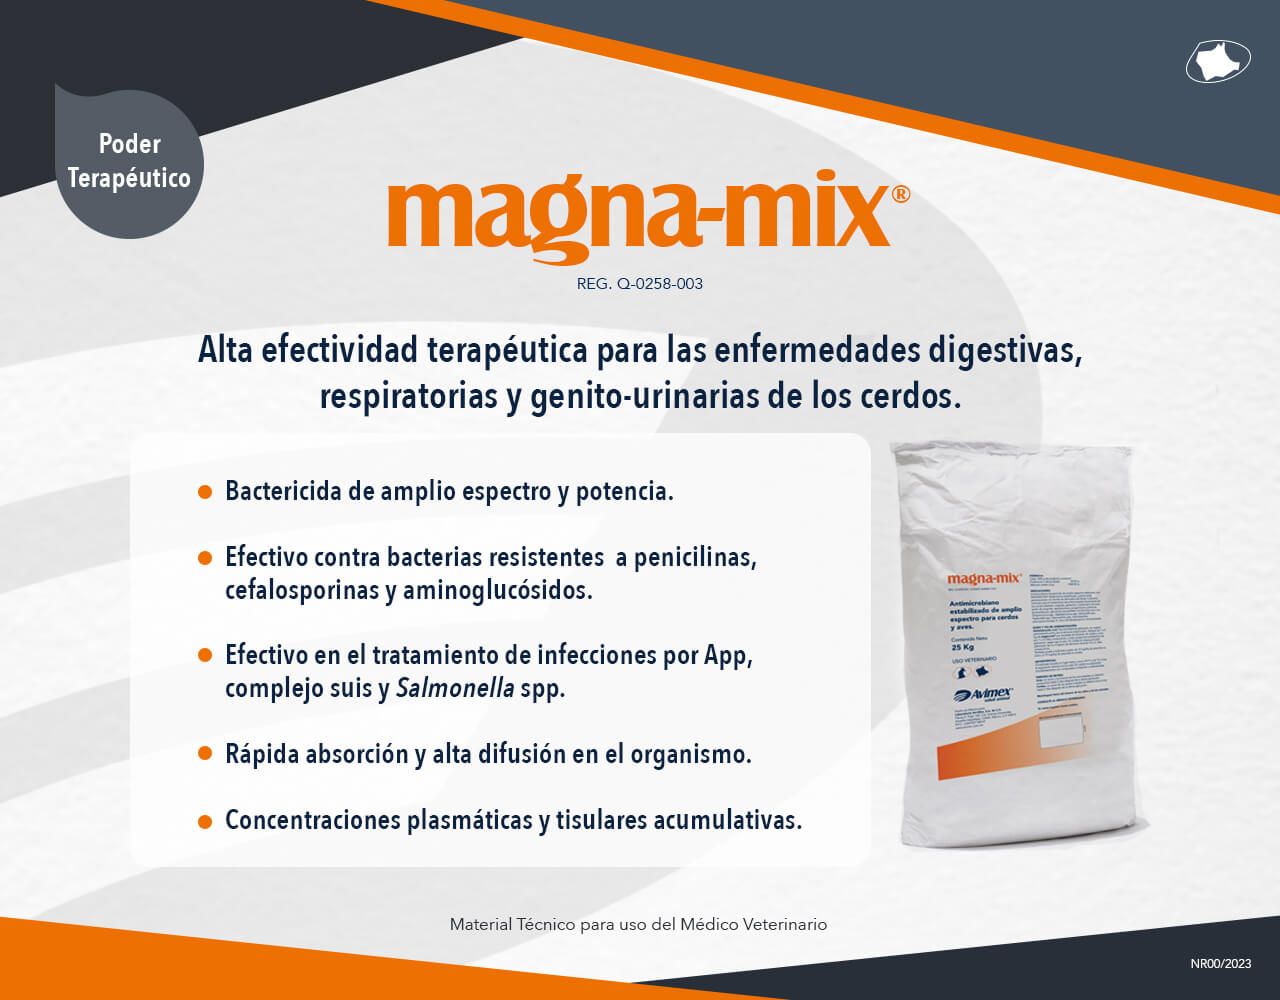 magna-mix®